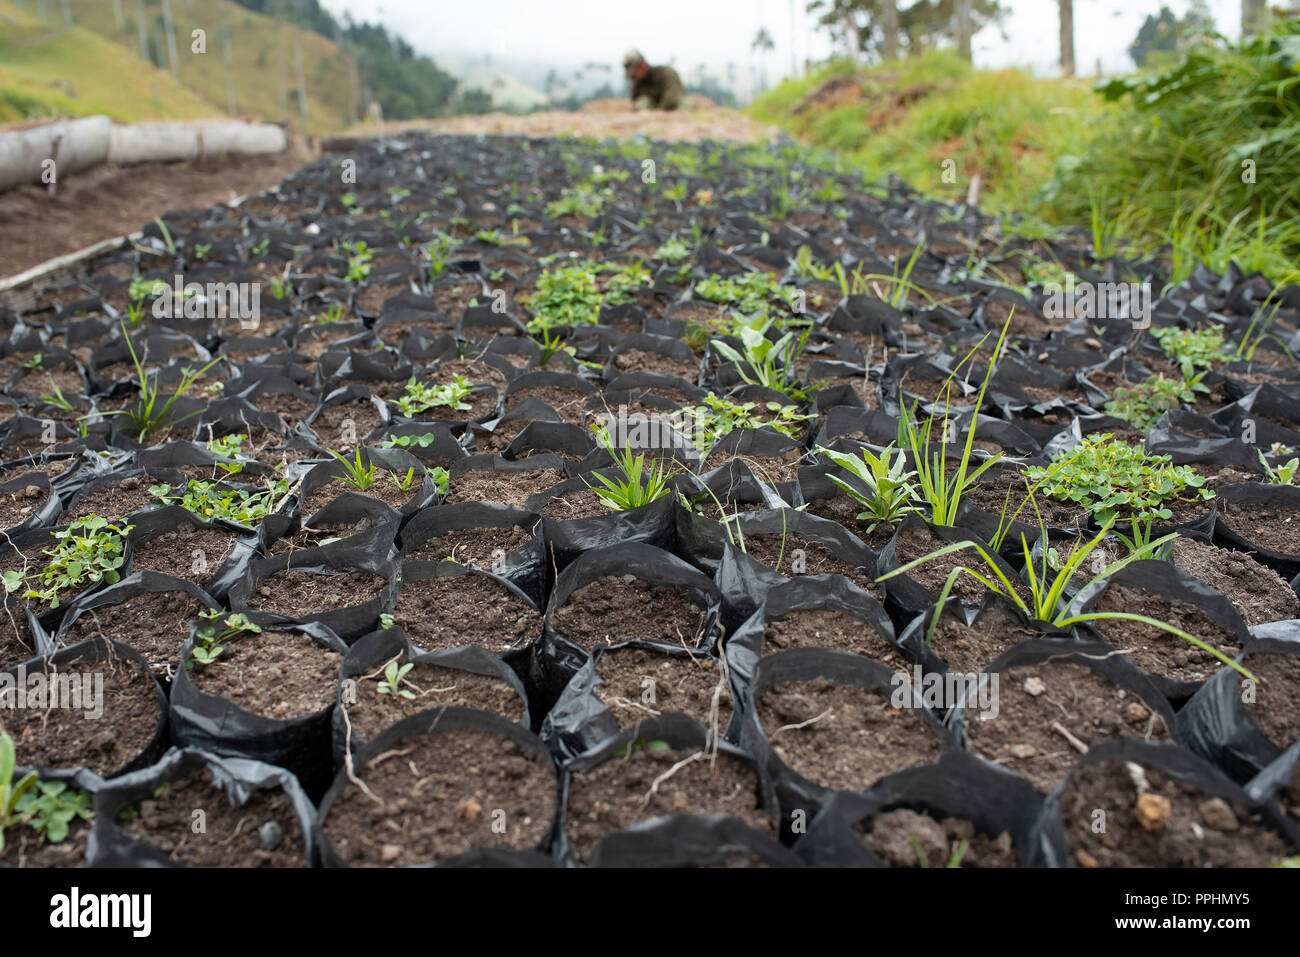 2/10 Reportage photo : palm Cire de graines semées dans le sol. L'Armée nationale travaillant sur la plantation de palmiers de cire dans la vallée de Cocora, Colombie. 13 Sep 2018 Banque D'Images